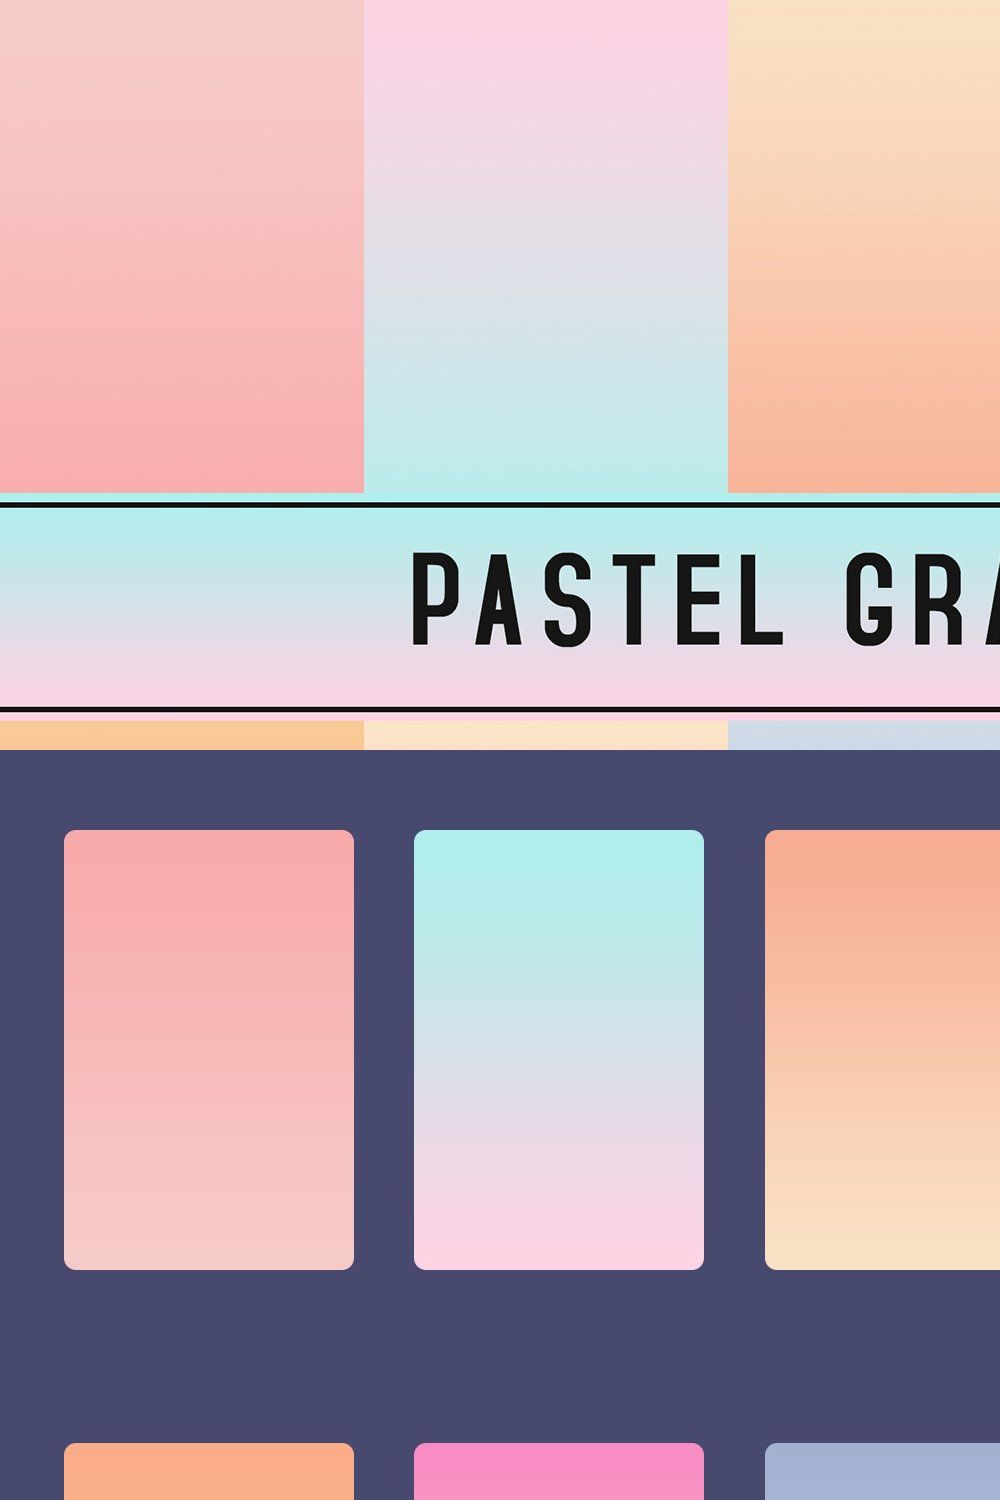 Pastel Gradients pinterest preview image.